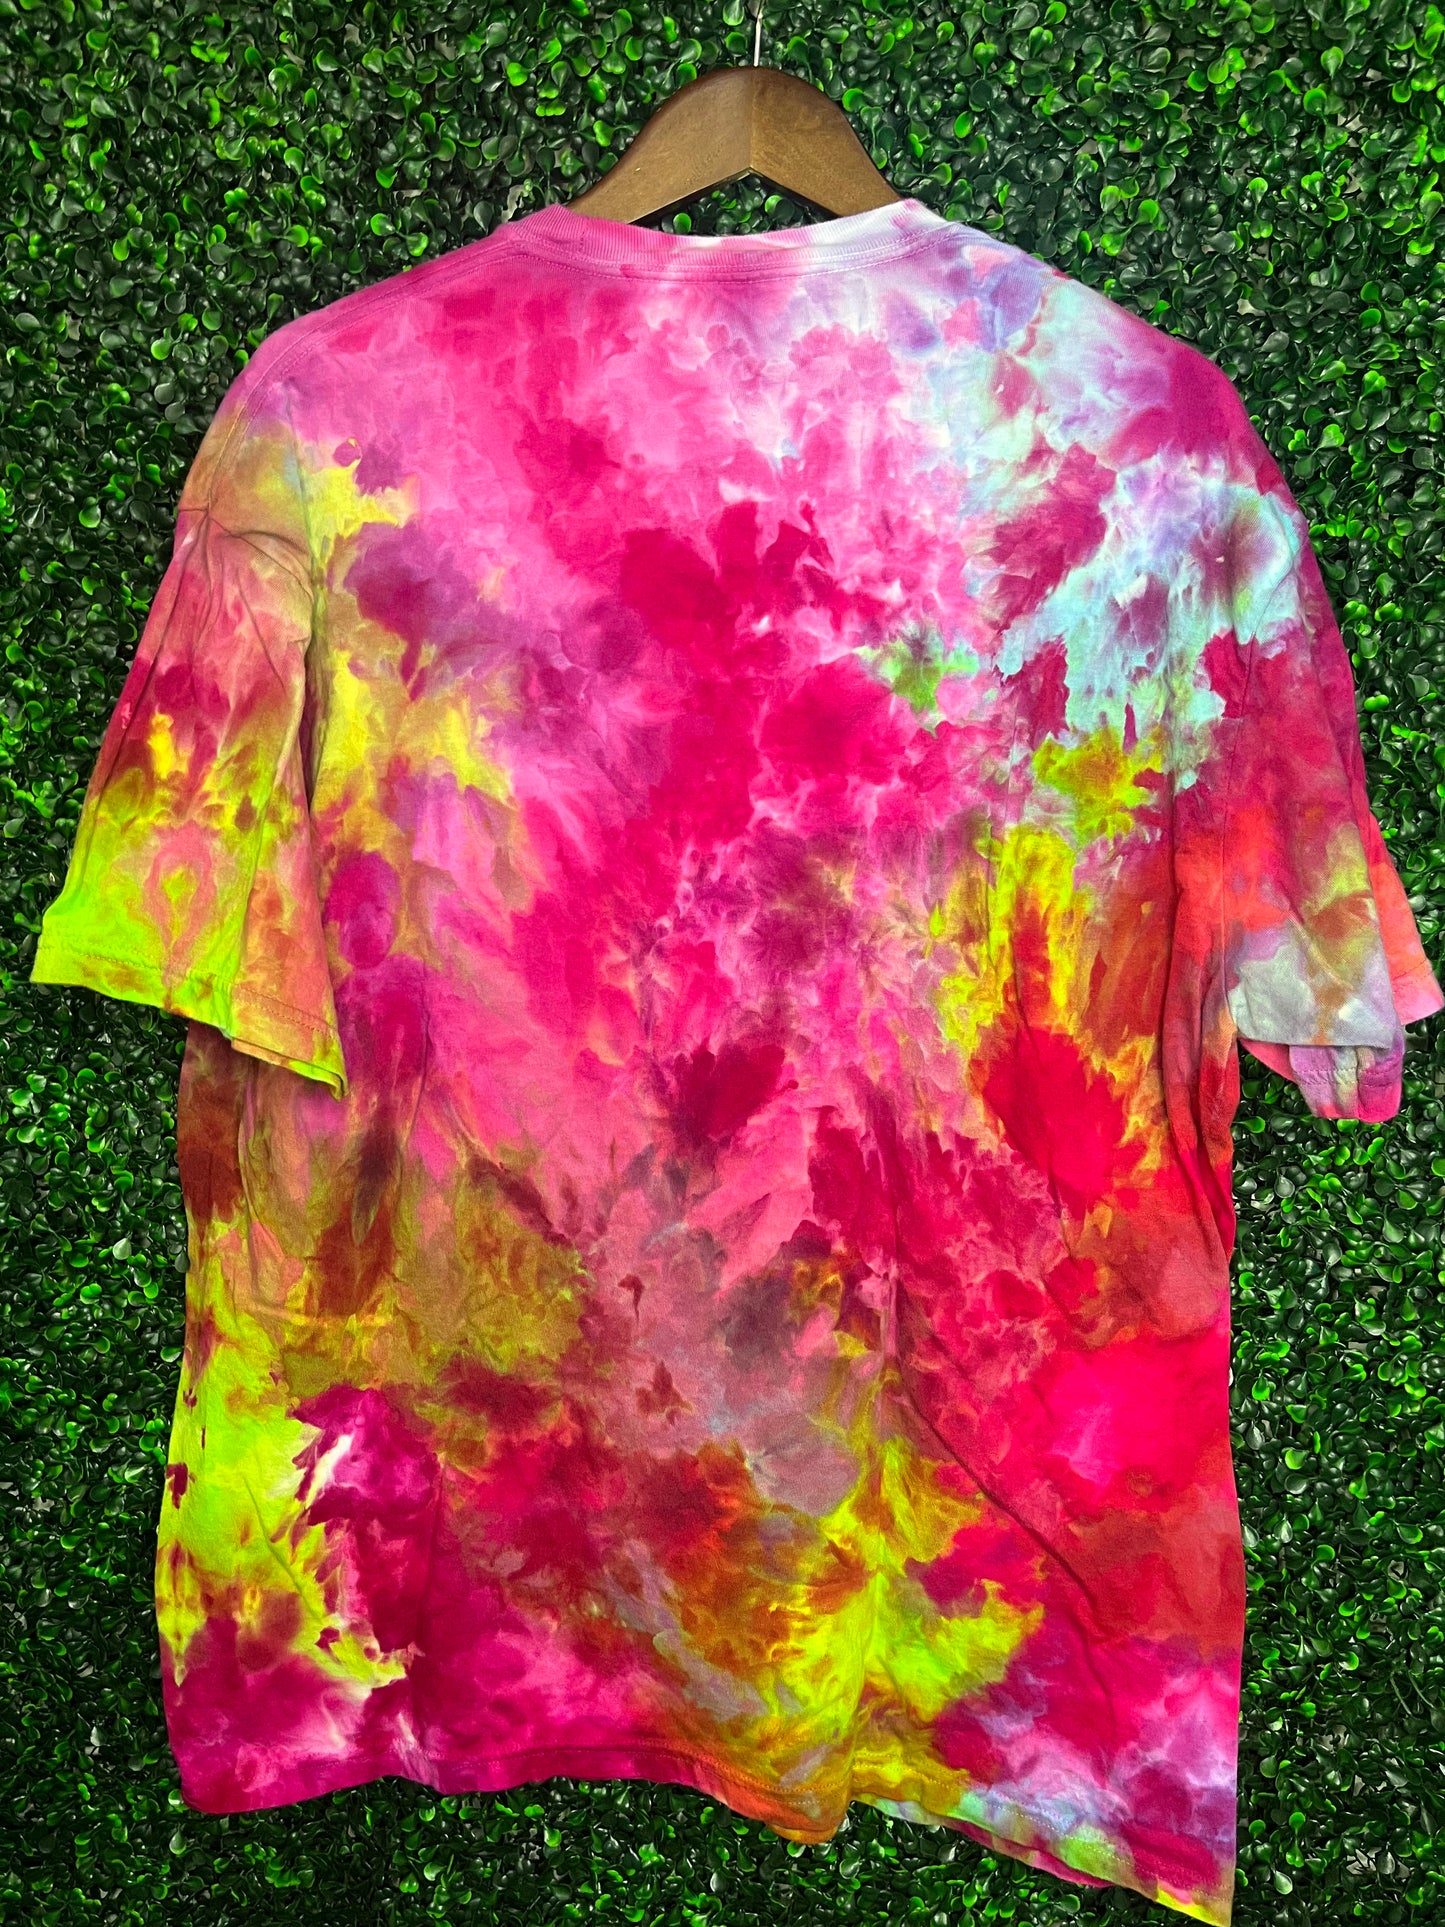 Size XL Comfort Colors acid rainbow scrunch tie dye